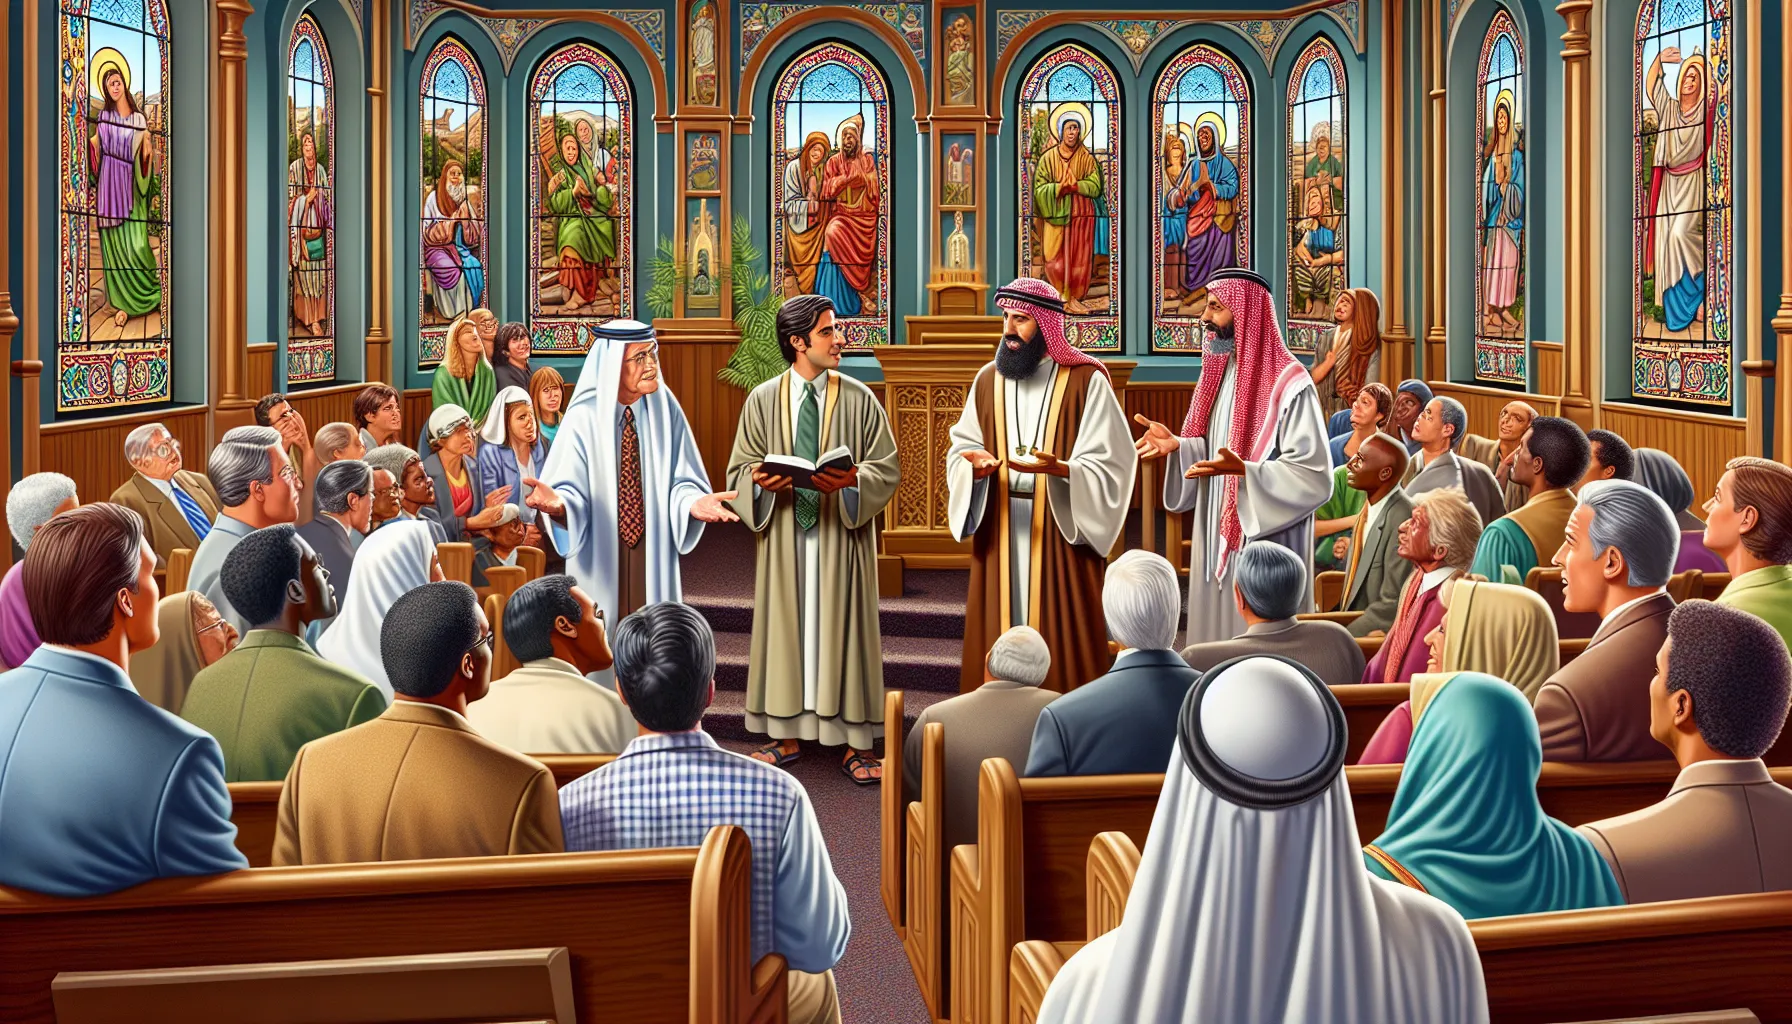 Imagen ilustrativa del debate sobre el baile en la comunidad cristiana según la interpretación bíblica